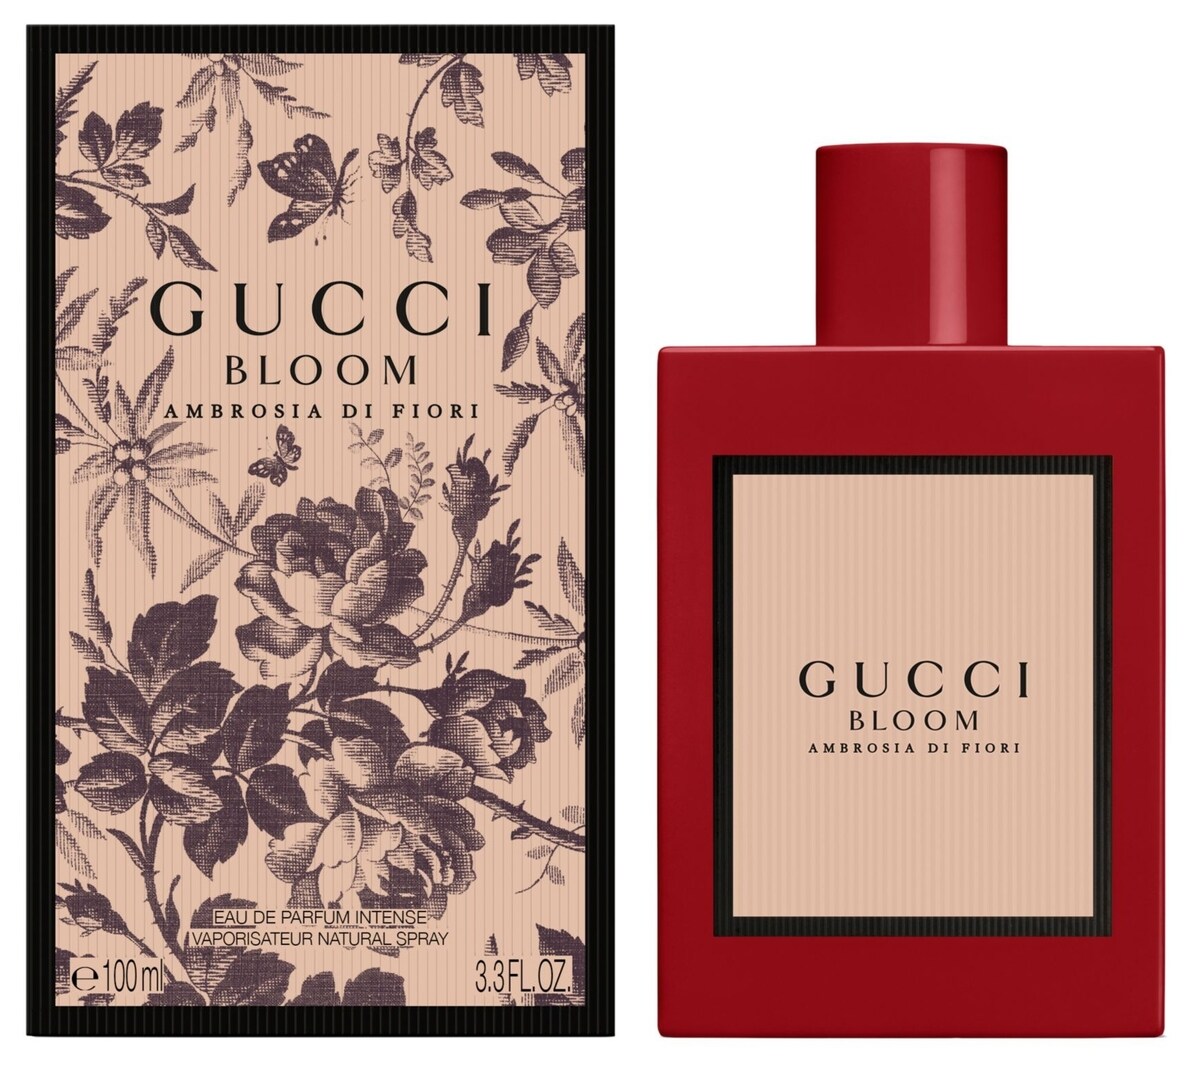 Gucci - Bloom Ambrosia di Fiori 